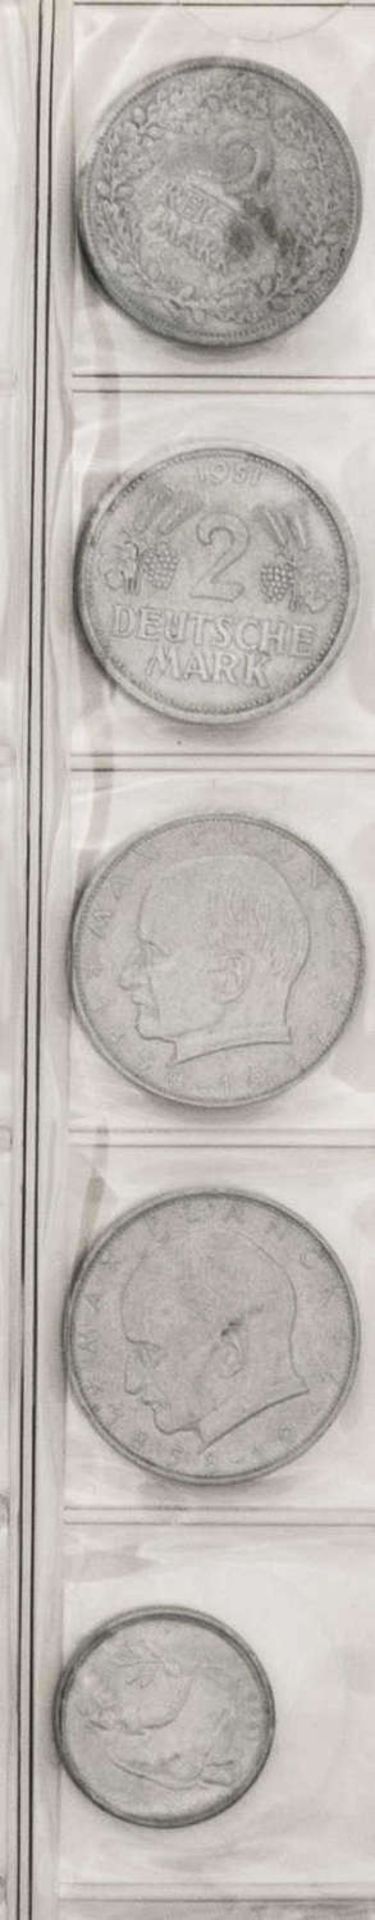 Deutschland, Sammlung 5 Pfennig - 50 Pfennig - Münzen vom Kaiserreich bis BRD. Dabei auch 1.- DM - Image 11 of 12